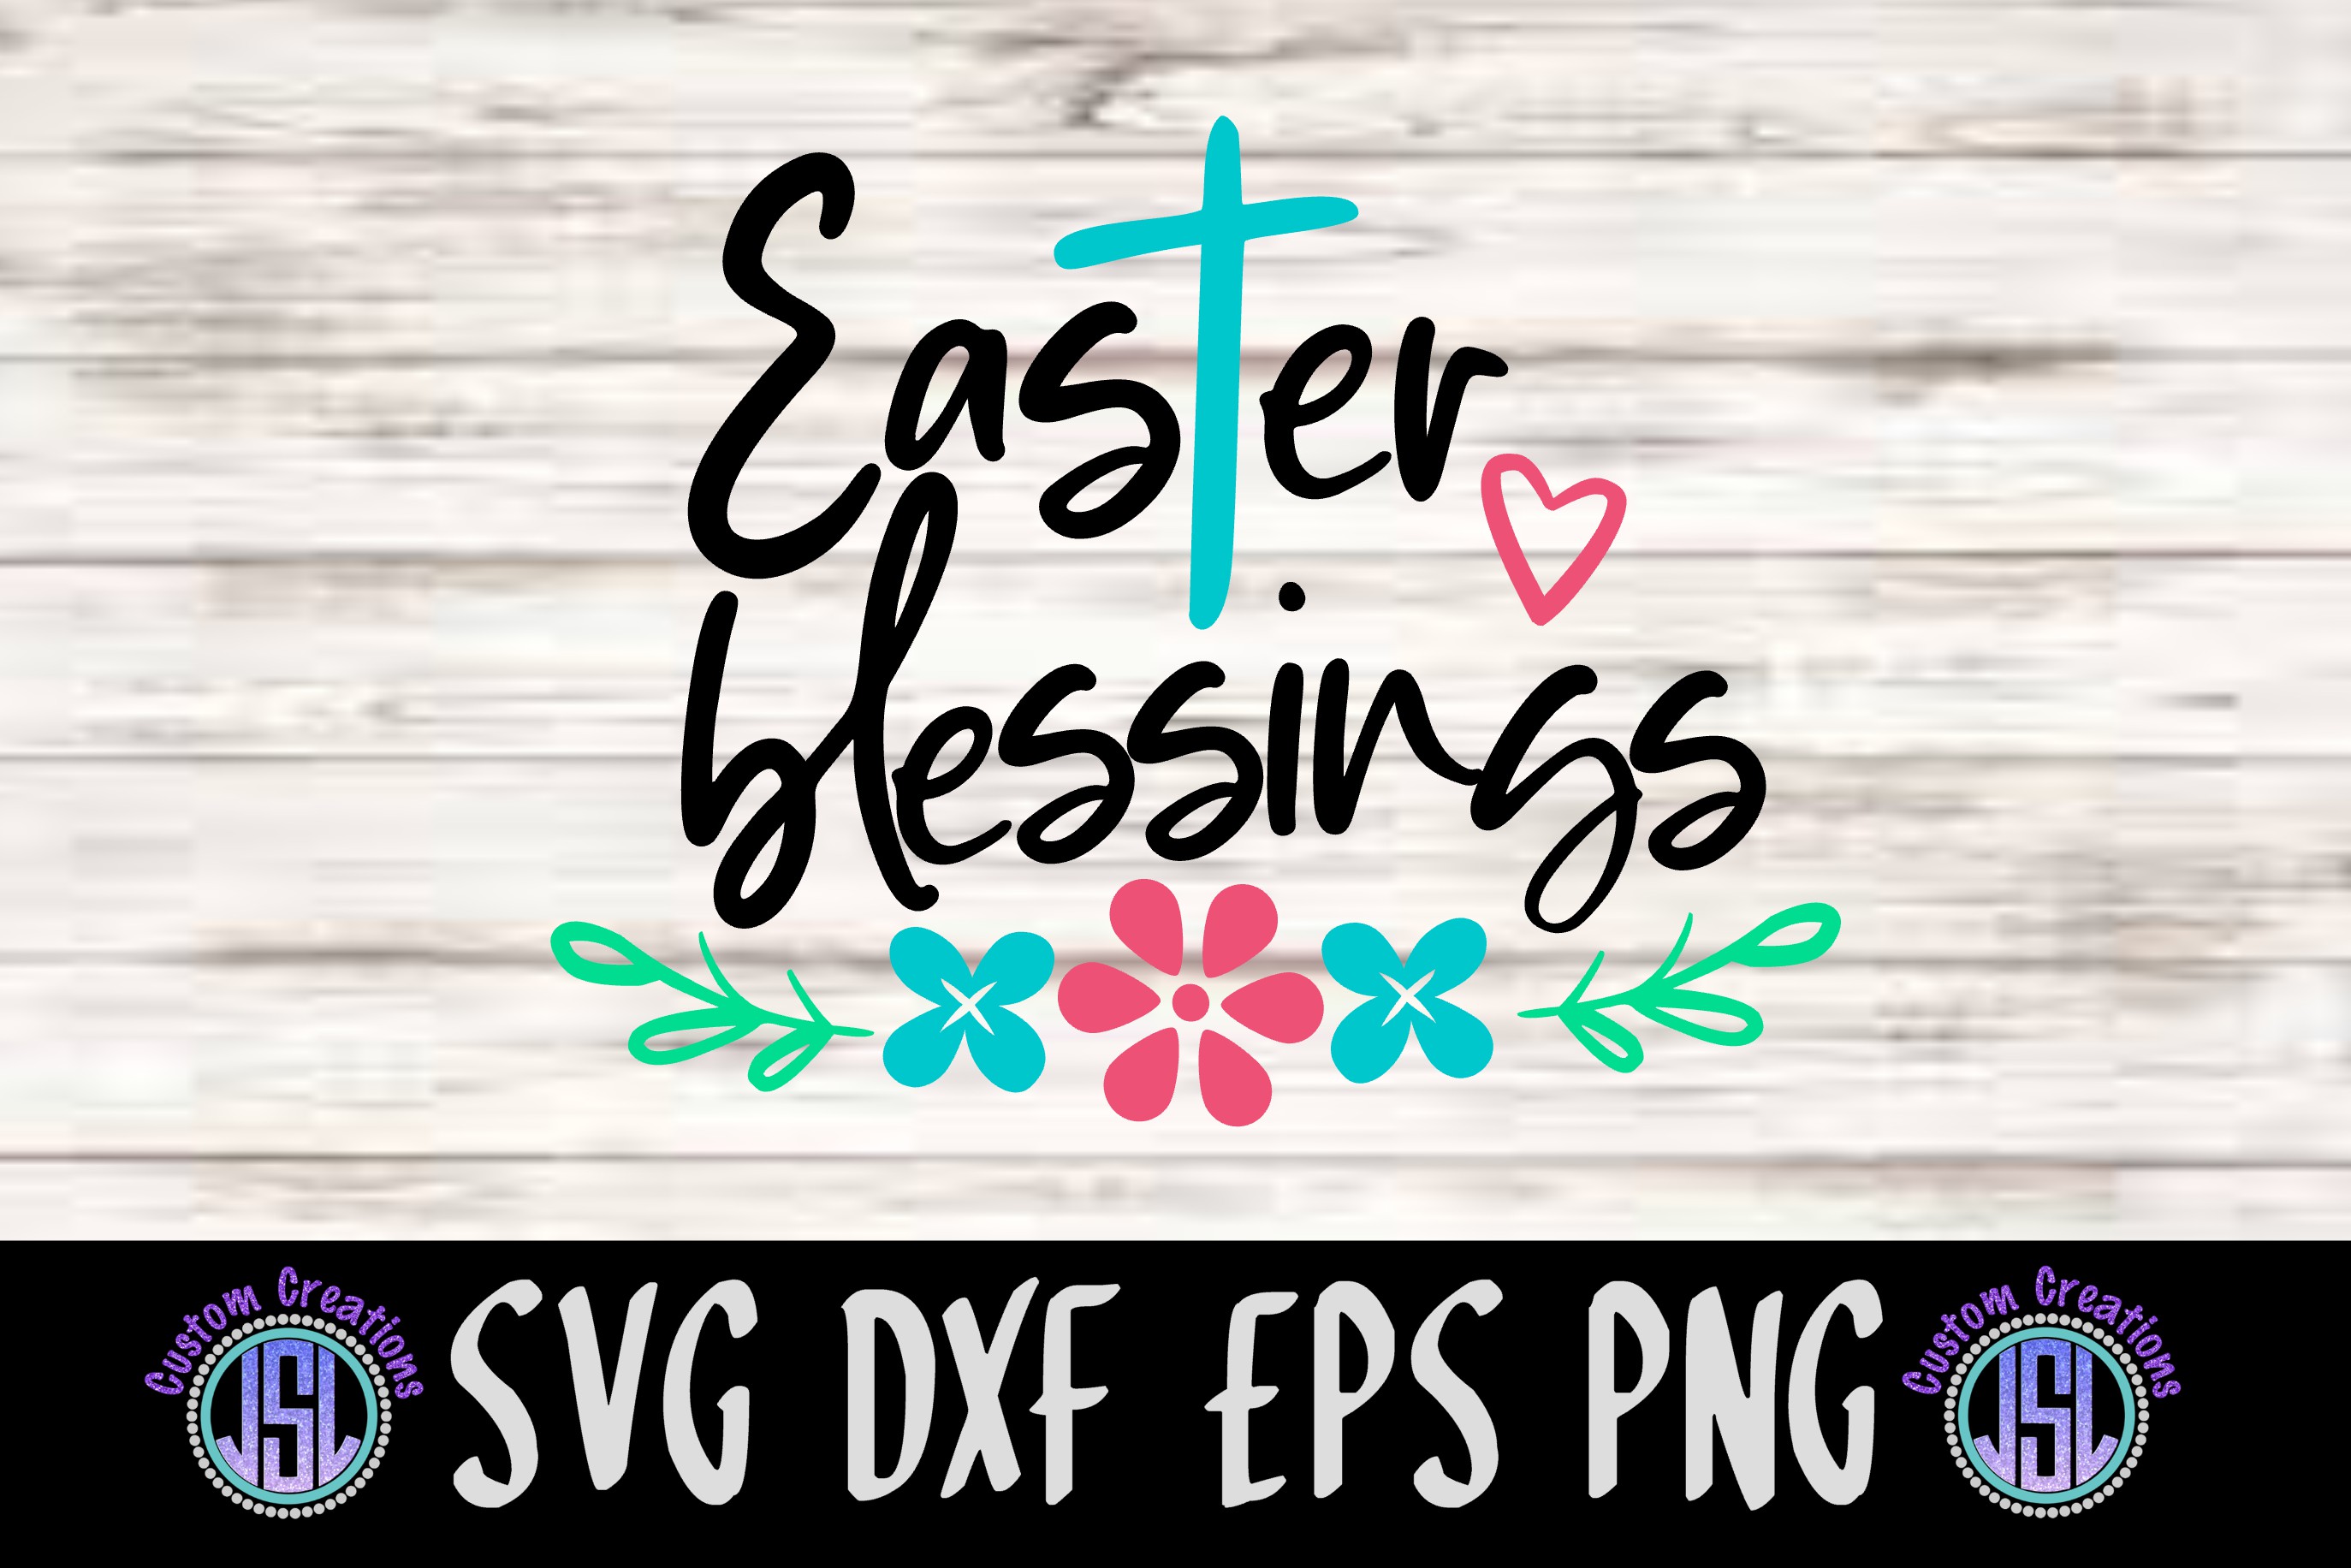 Easter Blessings | Digital Download | SVG DXF EPS PNG File